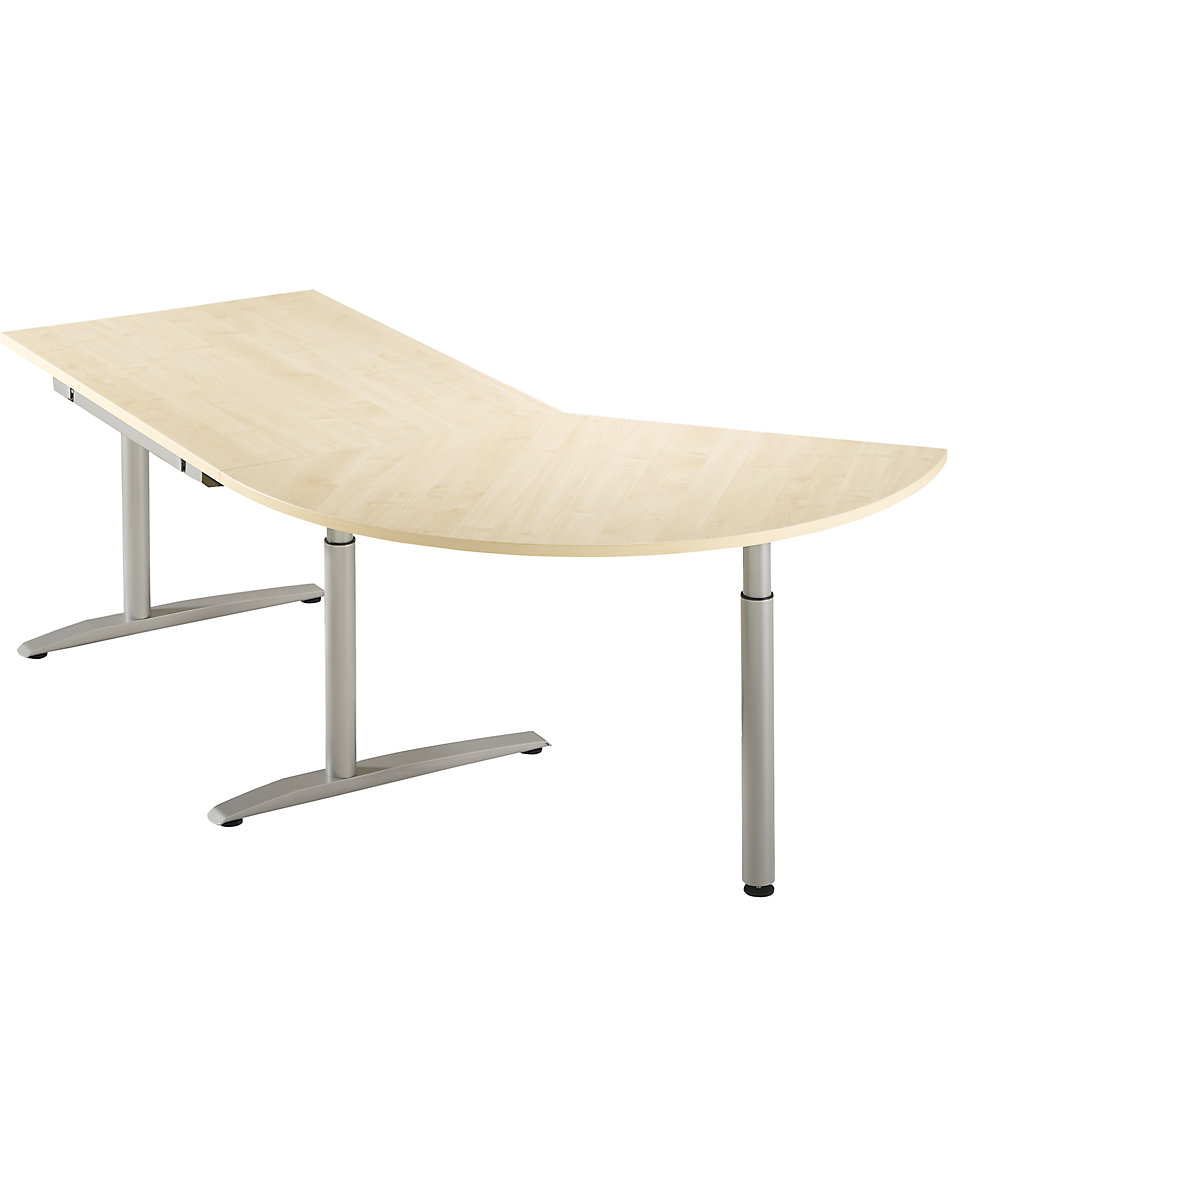 Přístavný stůl, výškově přestavitelný v rozsahu 650 – 850 mm HANNA, 3/8 kruhu, s opěrnou nohou, javorový dekor-6